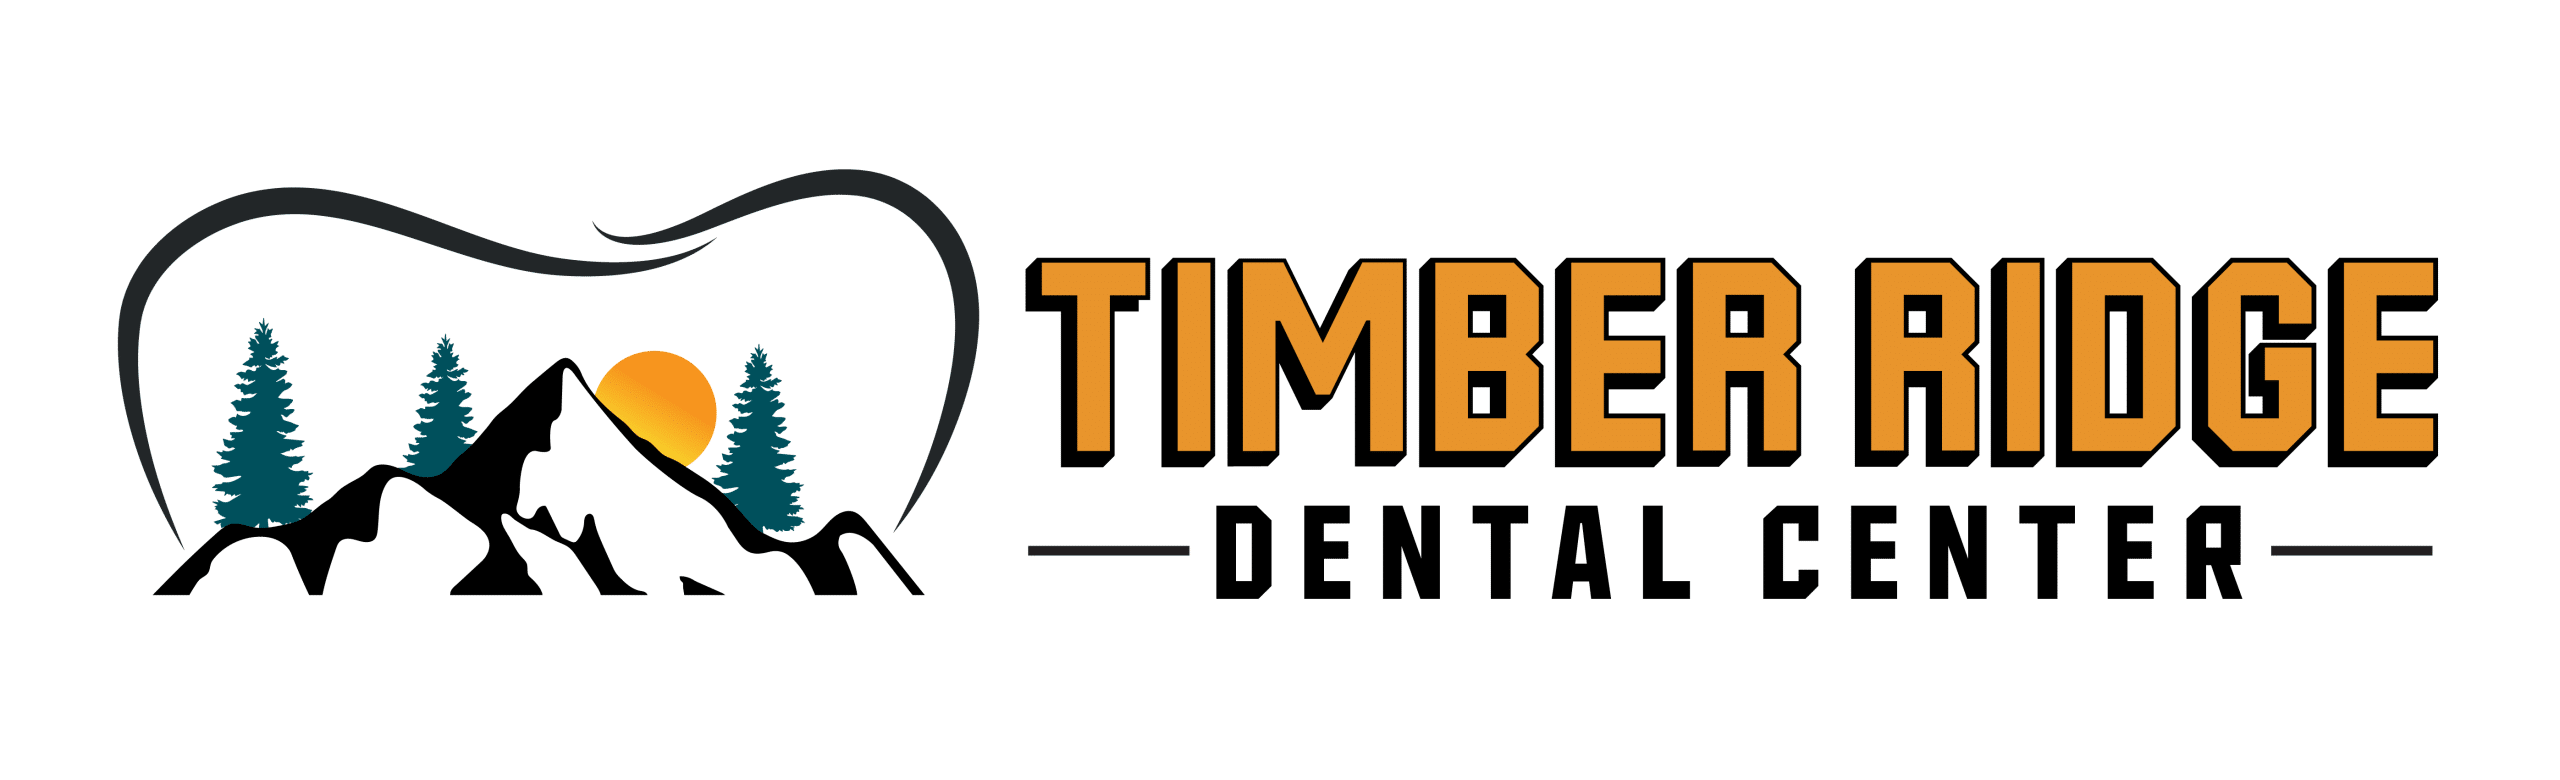 Timber Ridge Dental Center Logo